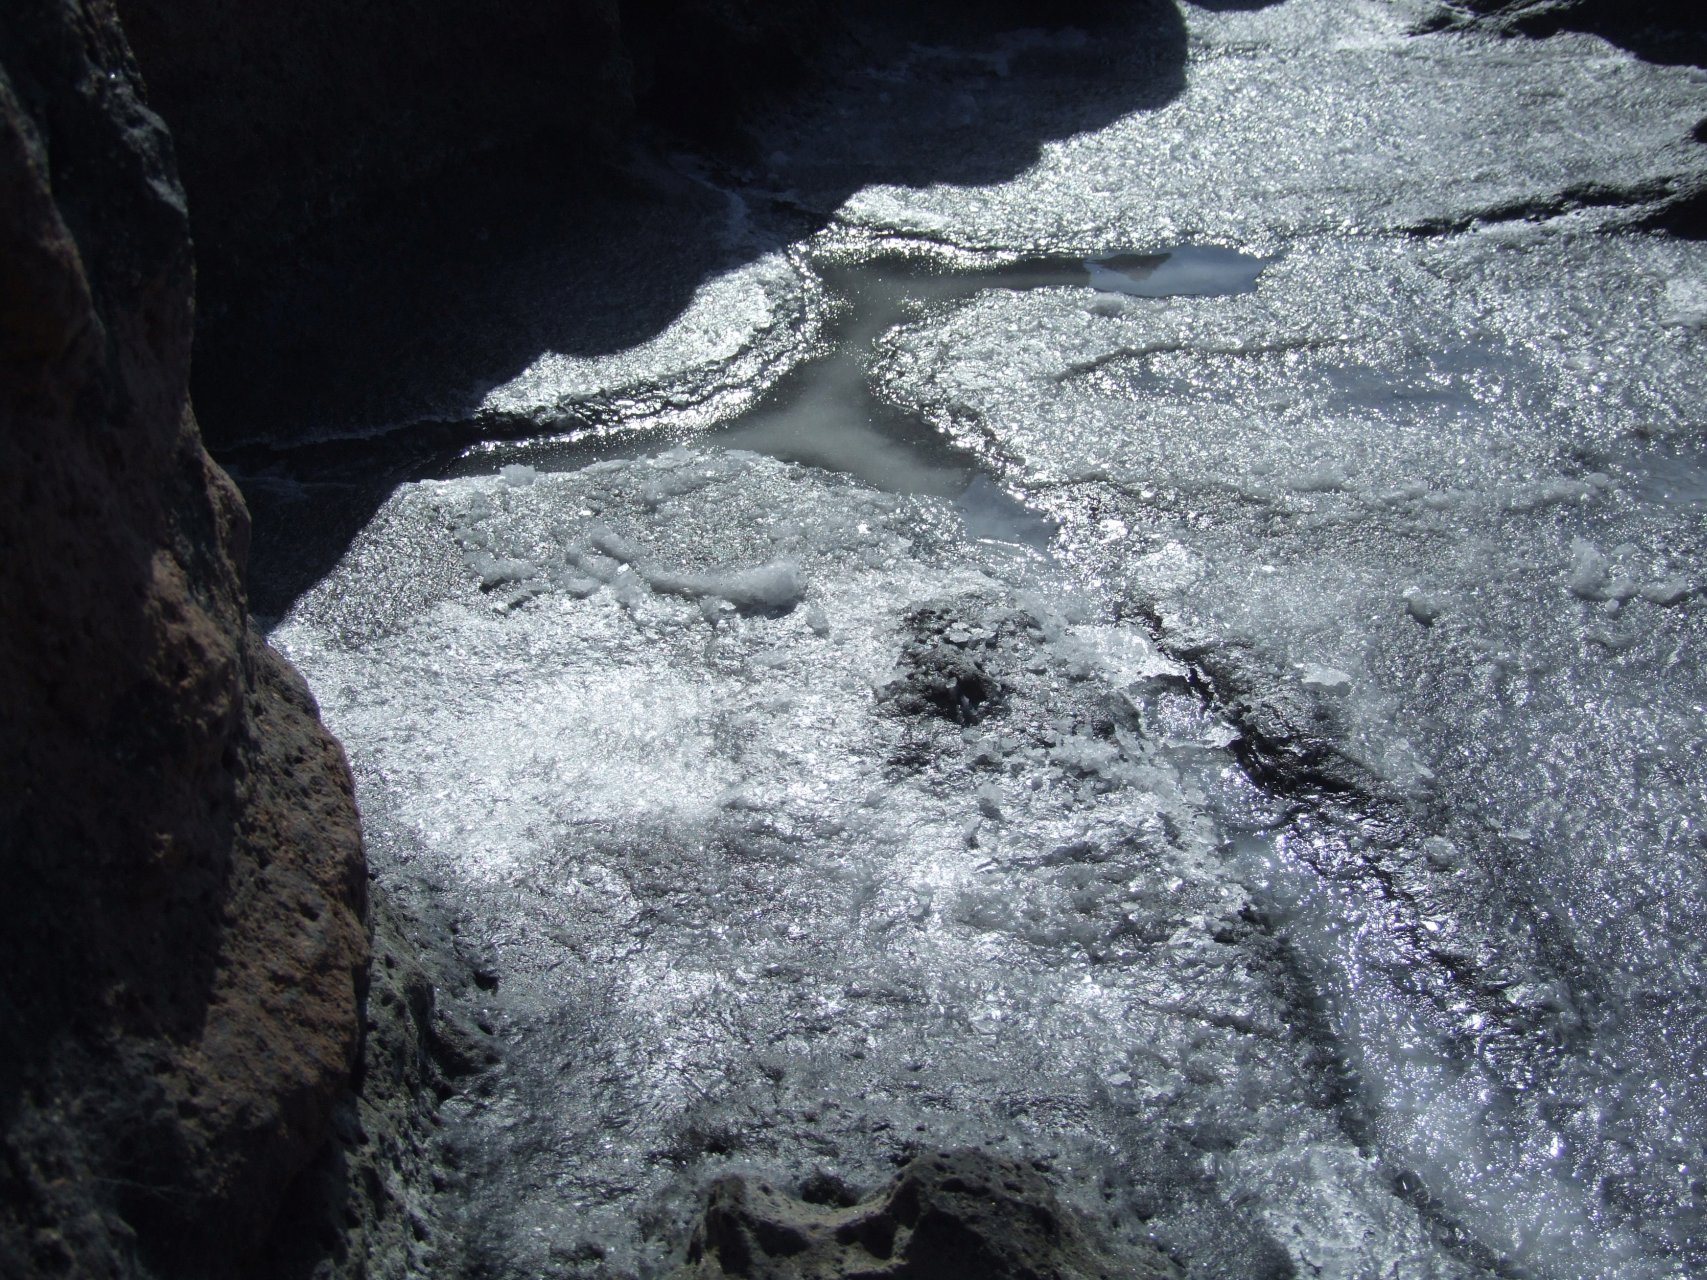 Po odparowaniu wody w szczelinach skalnych pozostaje sól